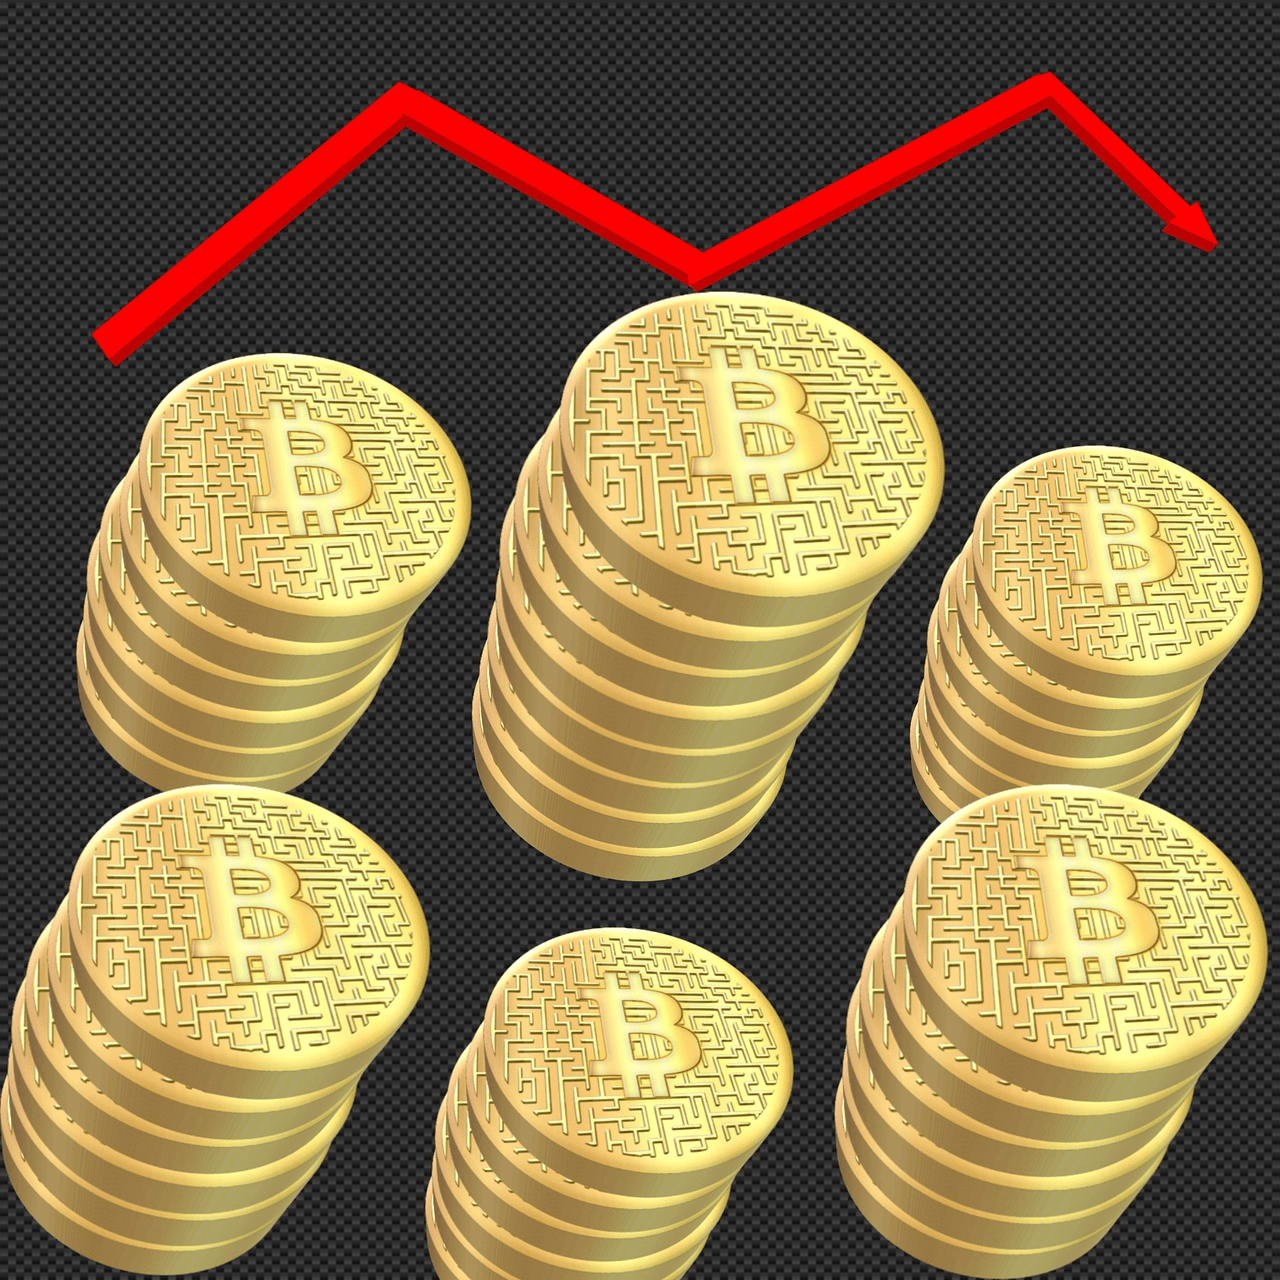 L'image représente Bitcoin et une flèche rouge pointant vers le bas